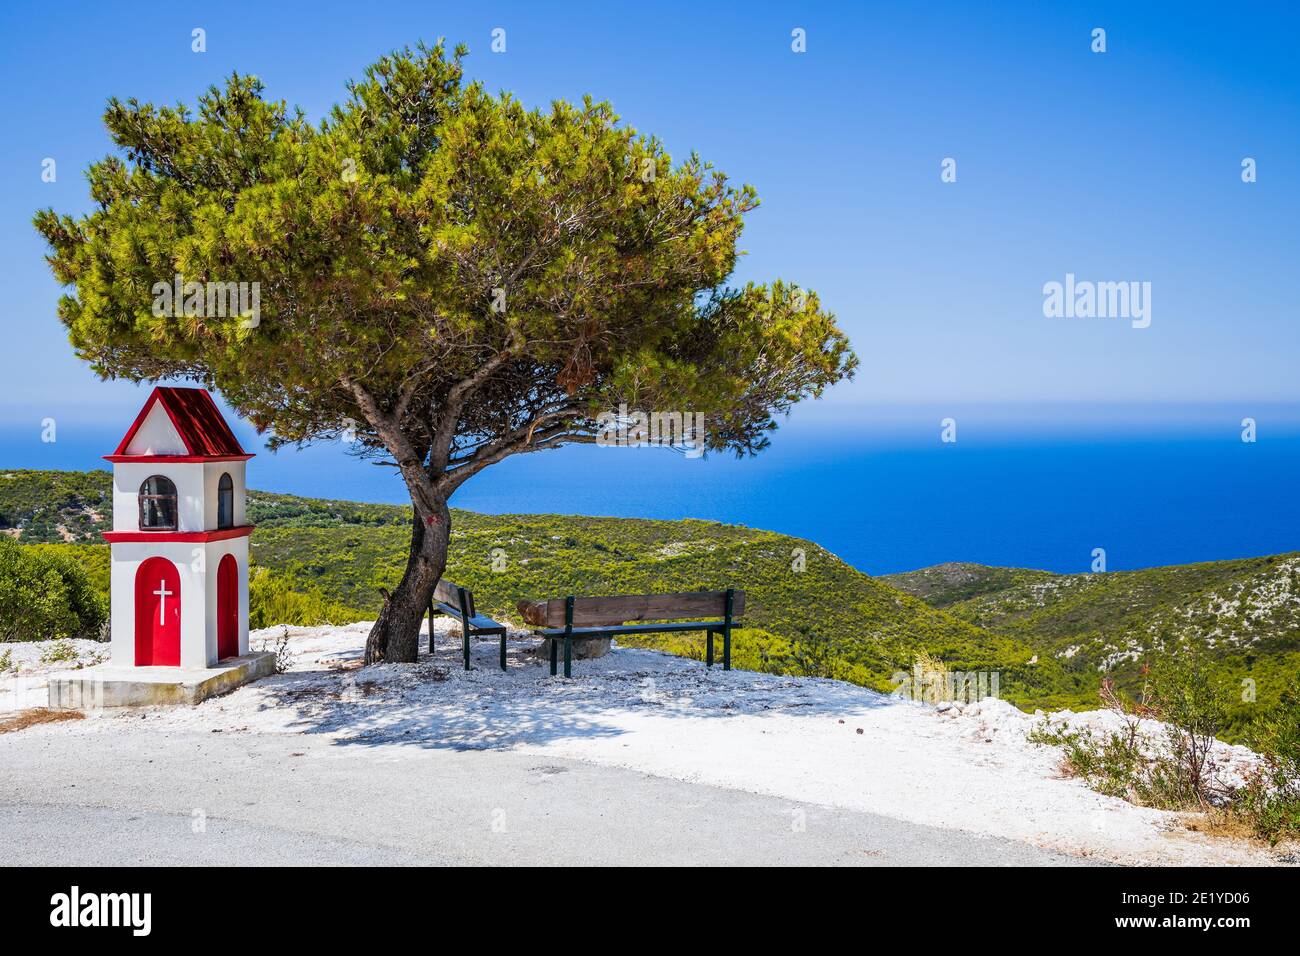 Zante, Grecia. Punto di osservazione con panca e albero. Foto Stock